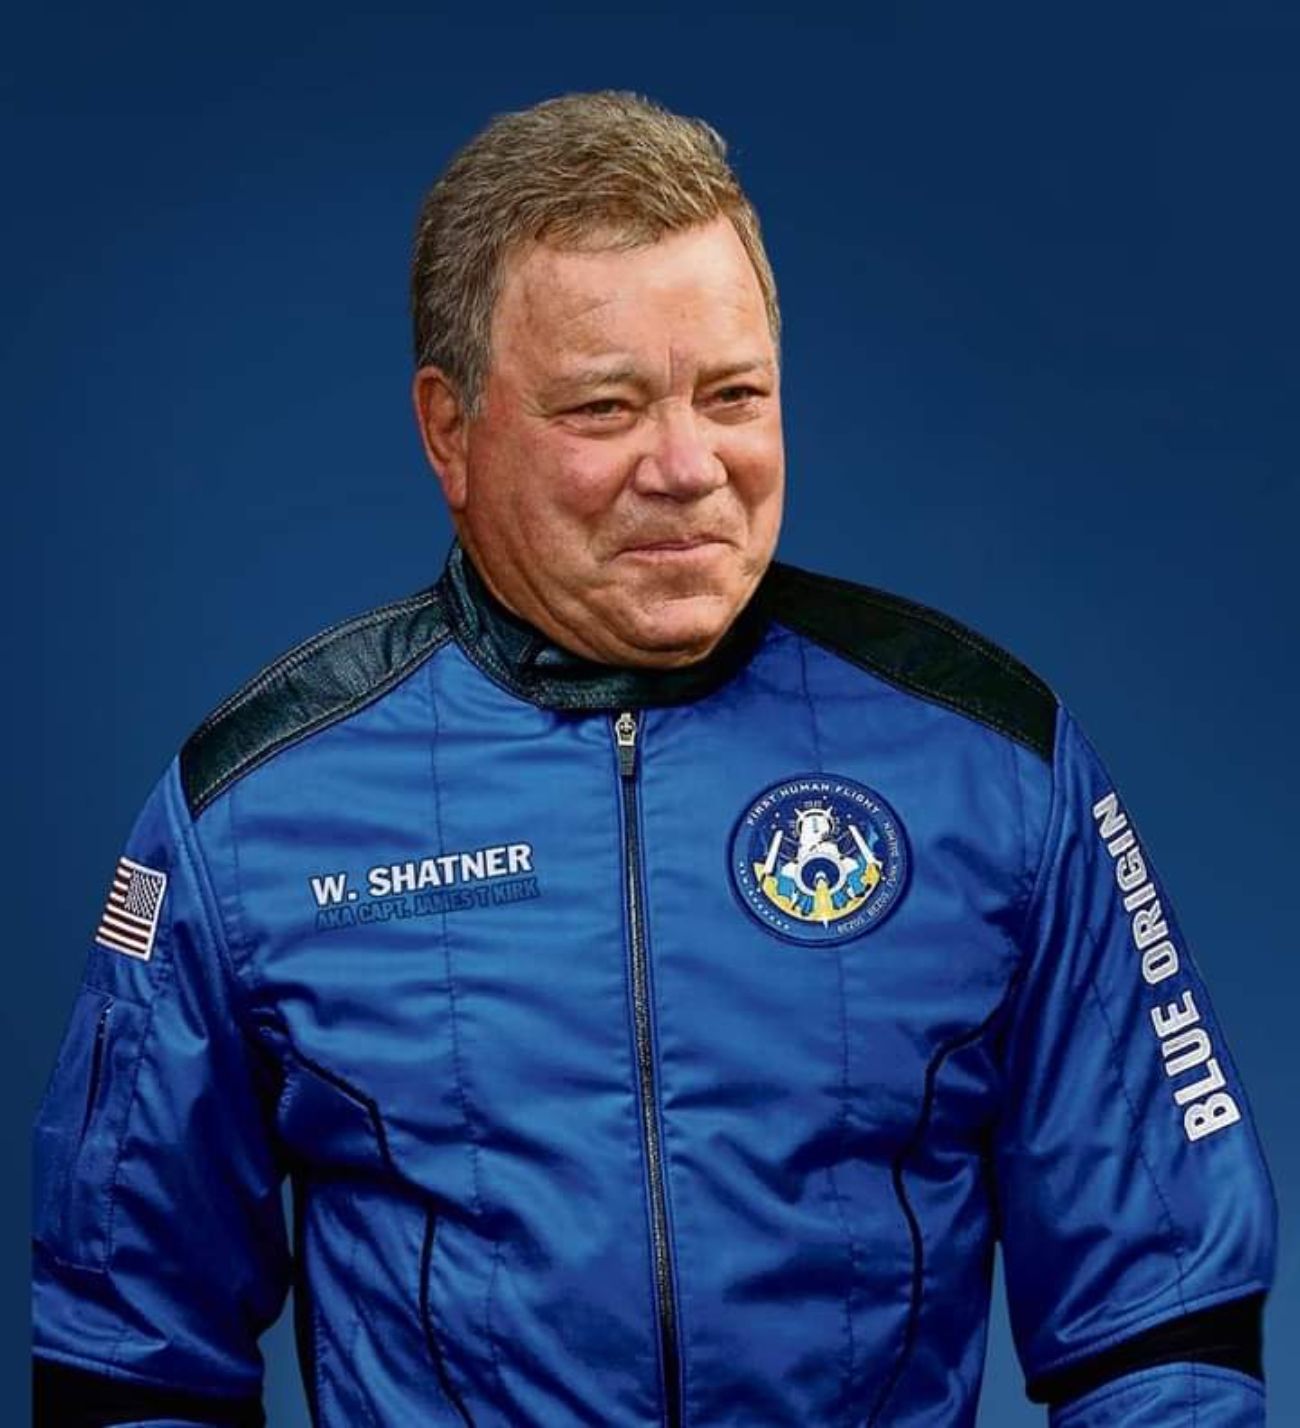 William Shatner hace historia y se convierte en la persona de más edad en ir al espacio con 90 años